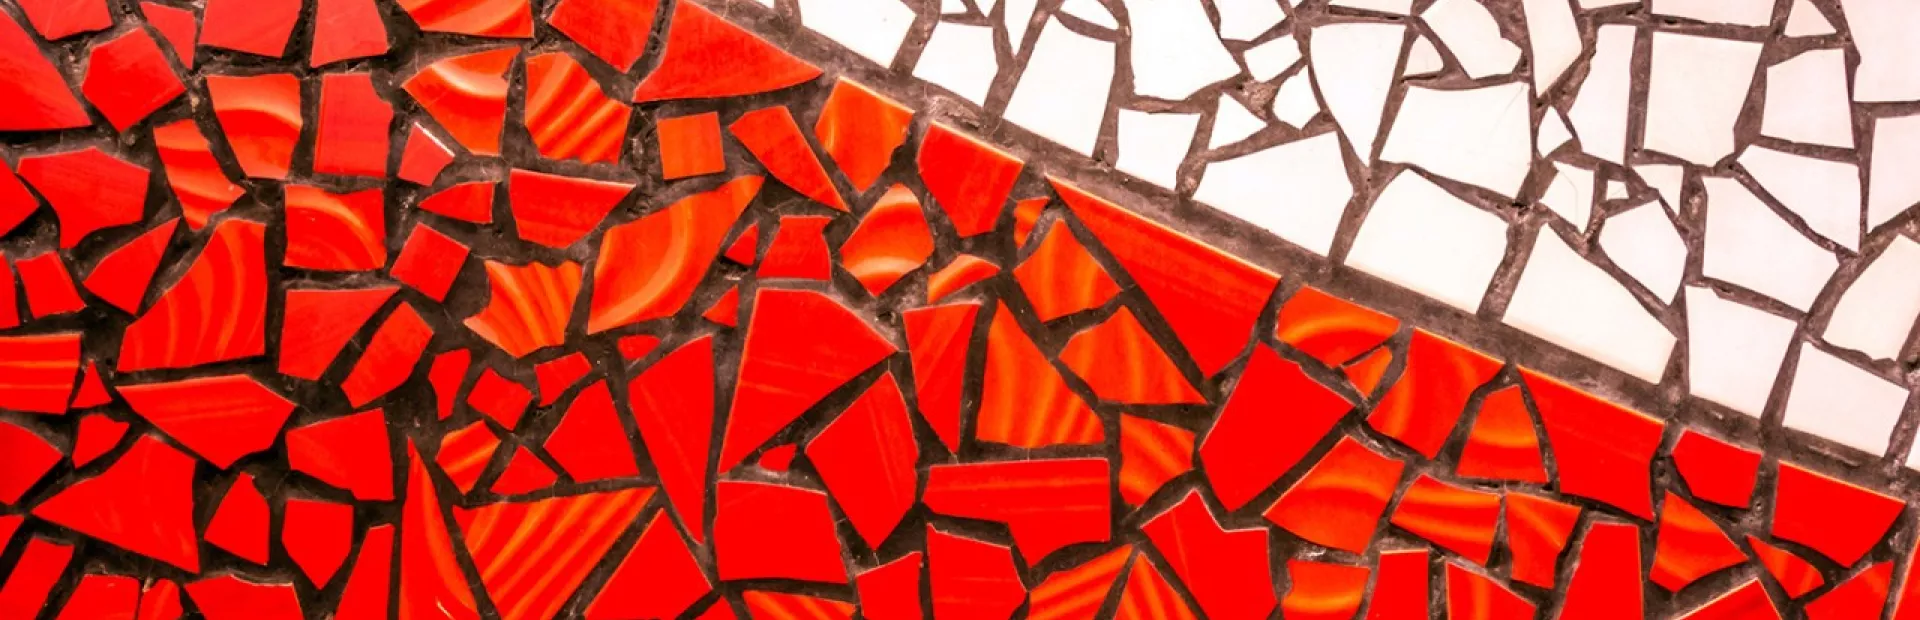 Mosaic tile art